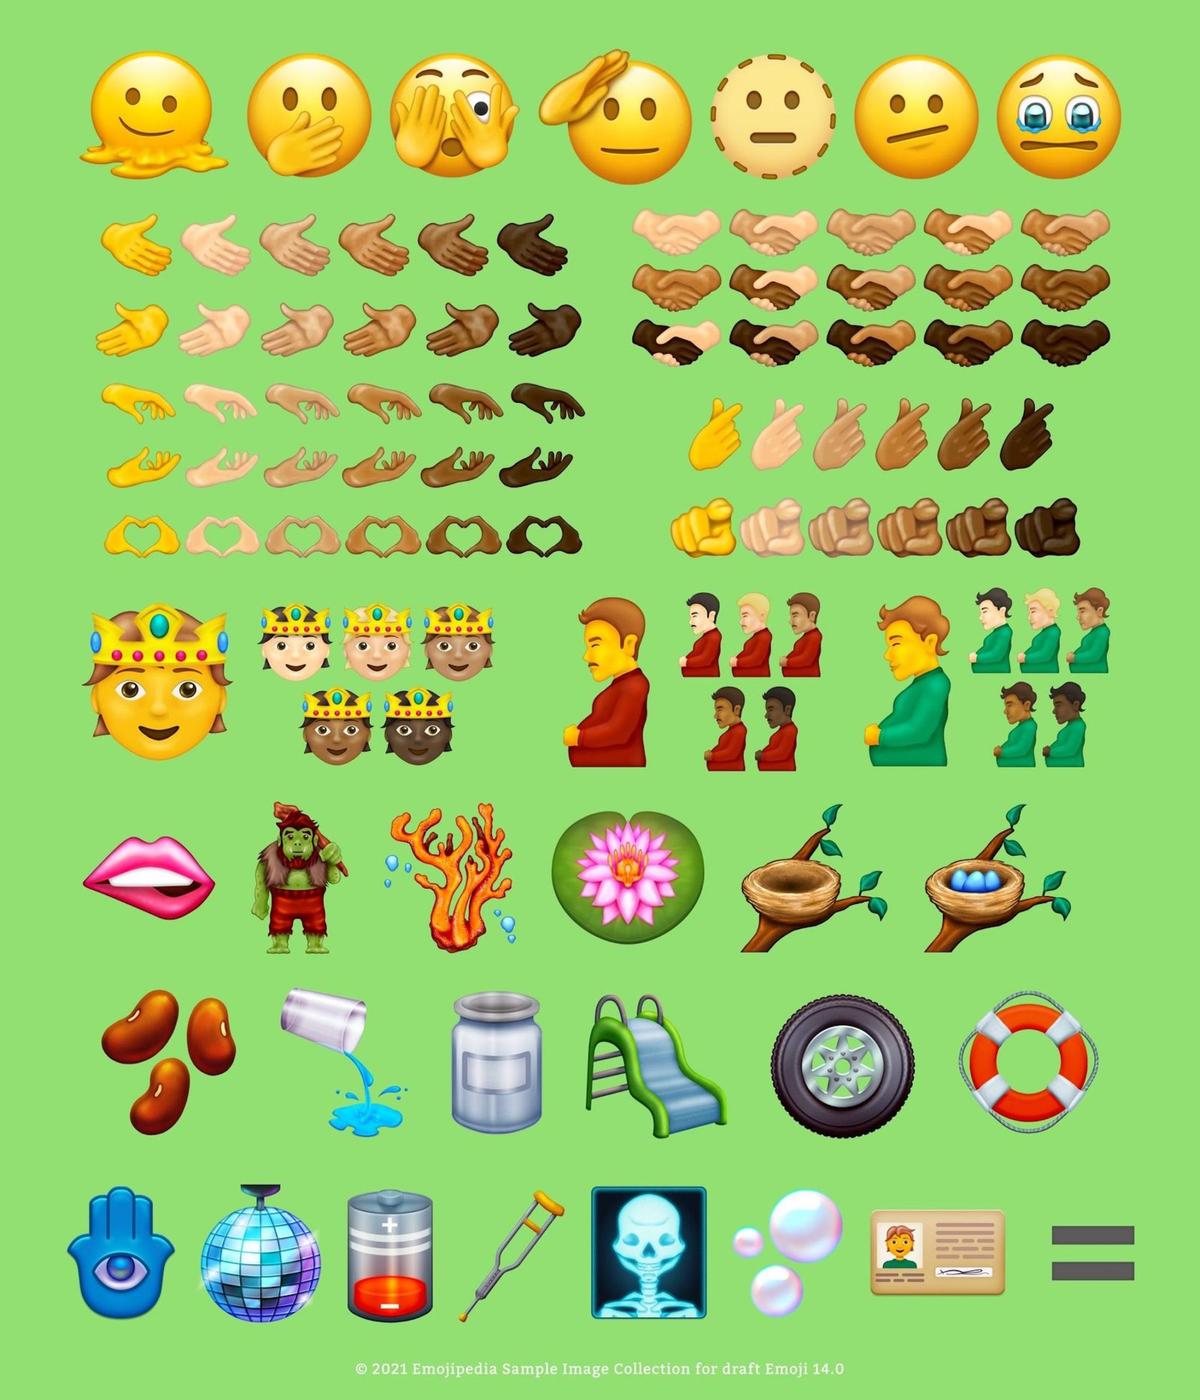 emoji 14.0 emotki emotikony 2021 unicode 14.0 0